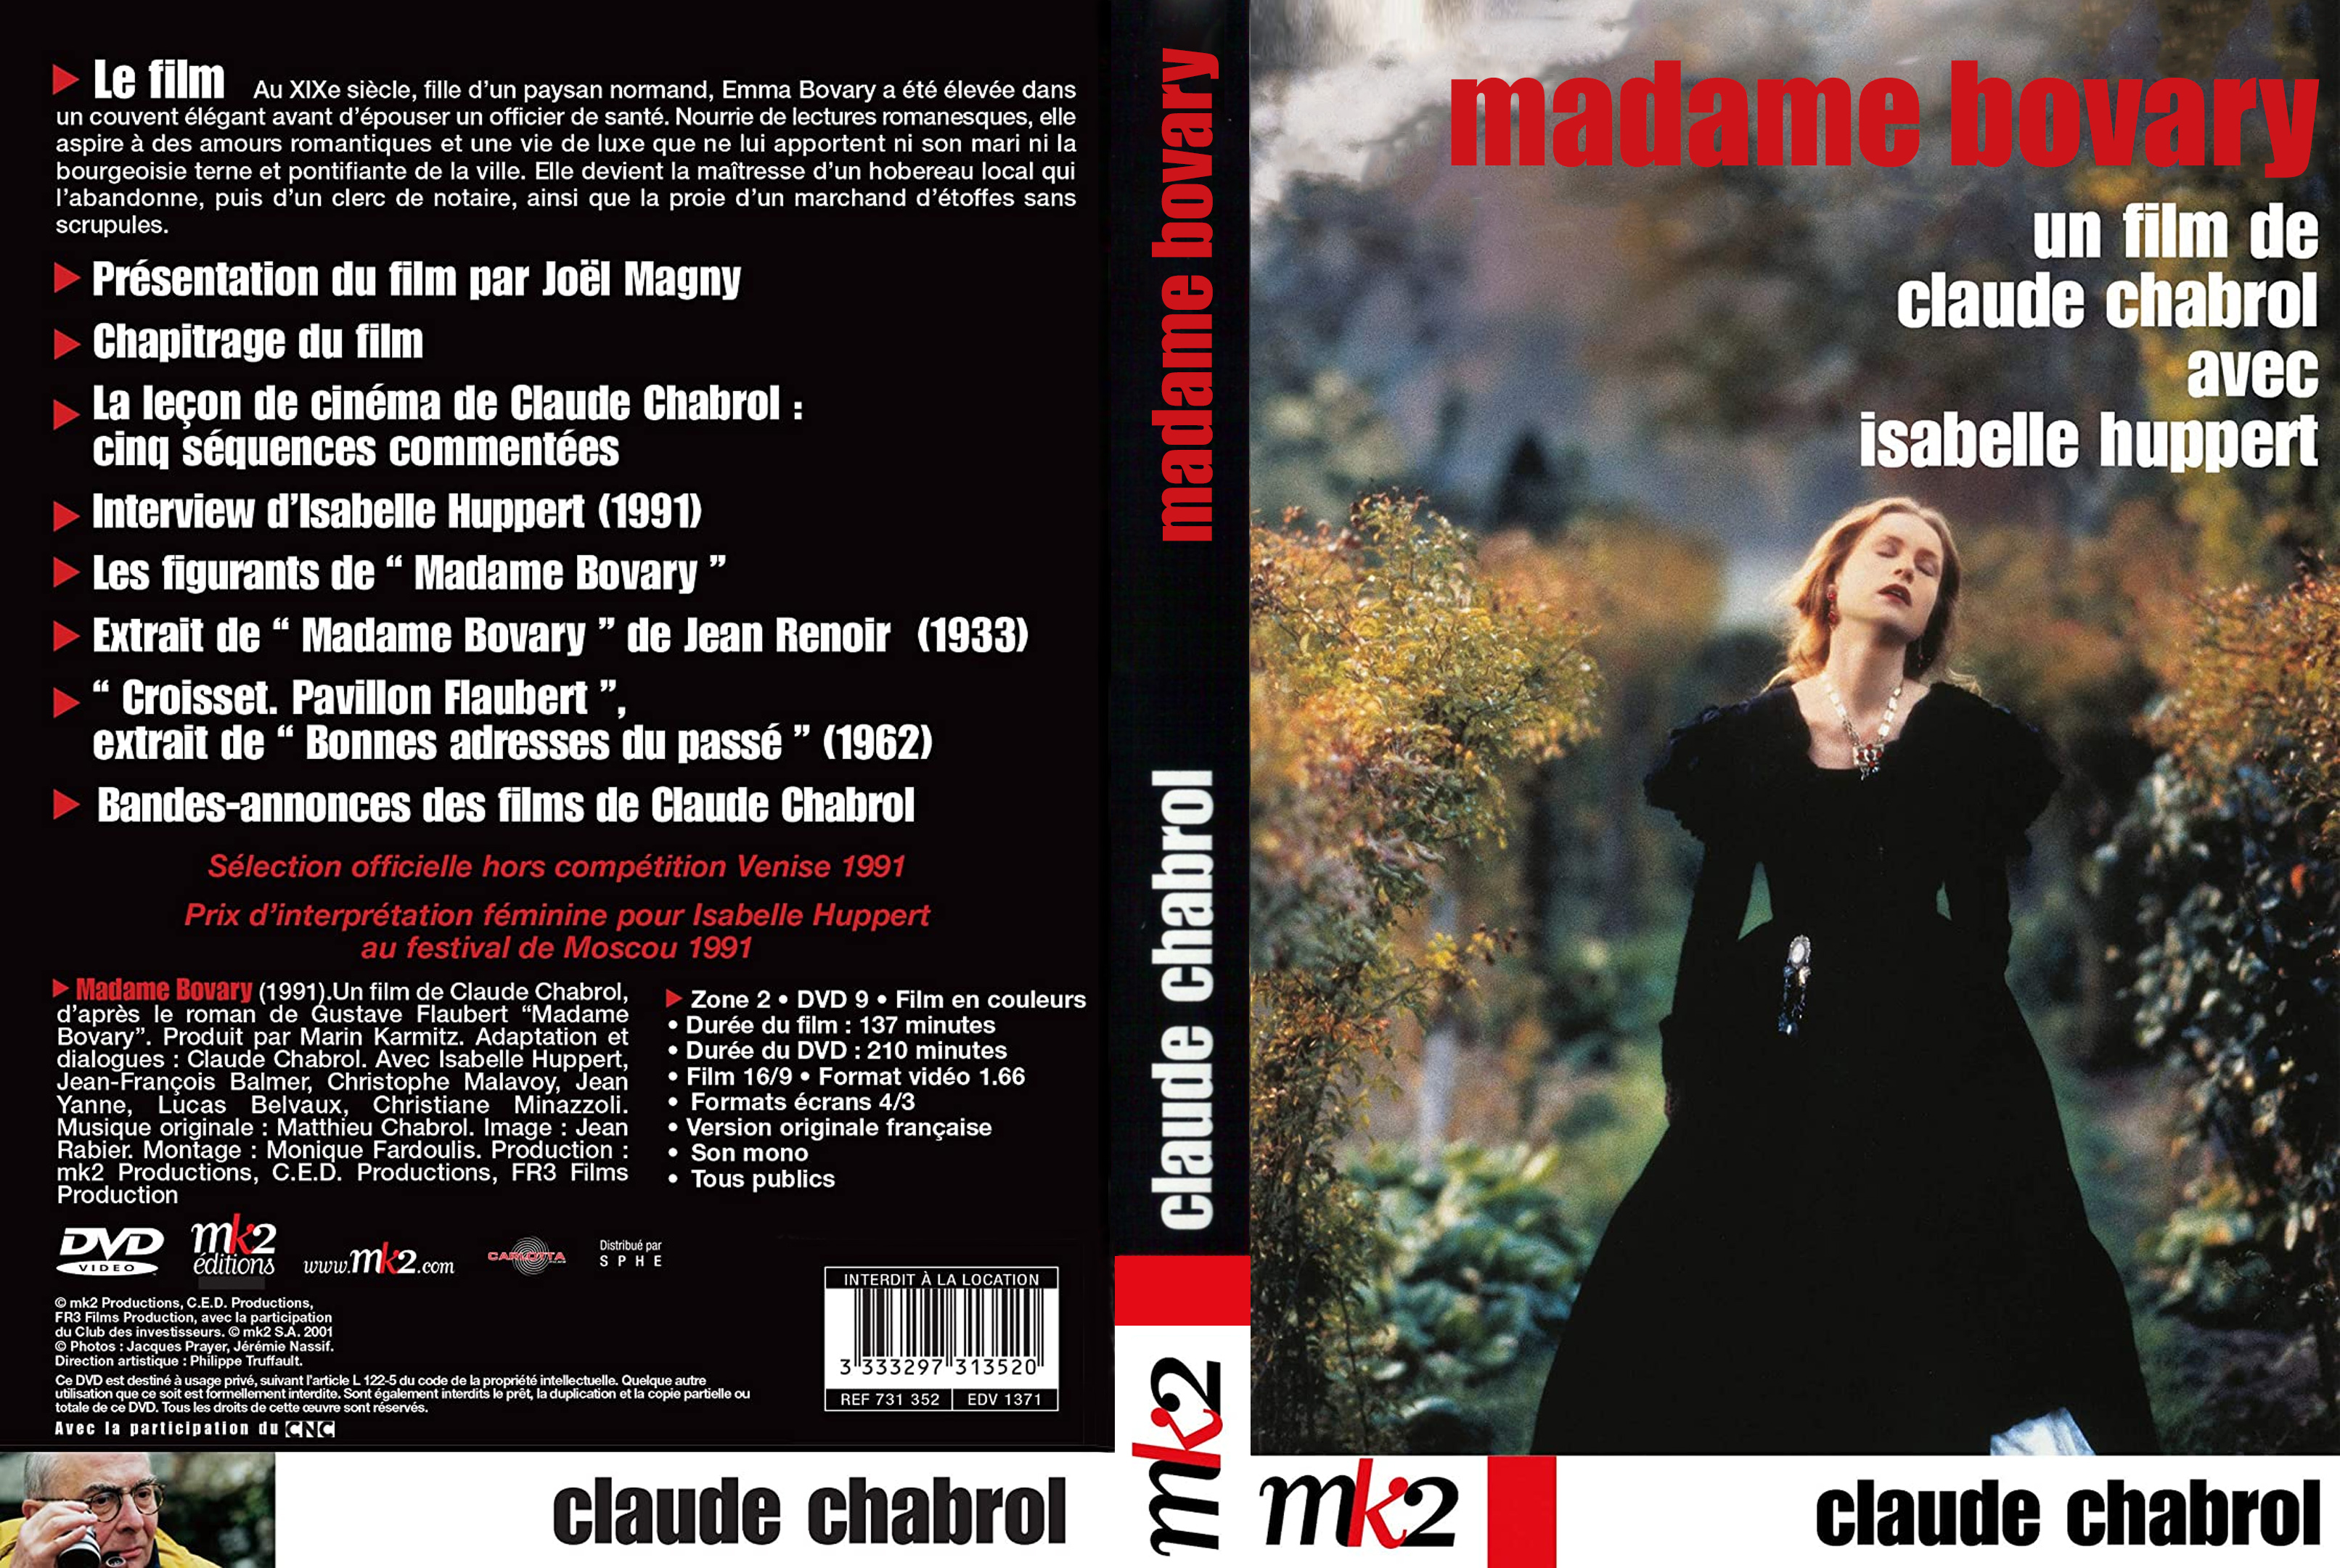 Jaquette DVD Madame Bovary (1991) custom v2